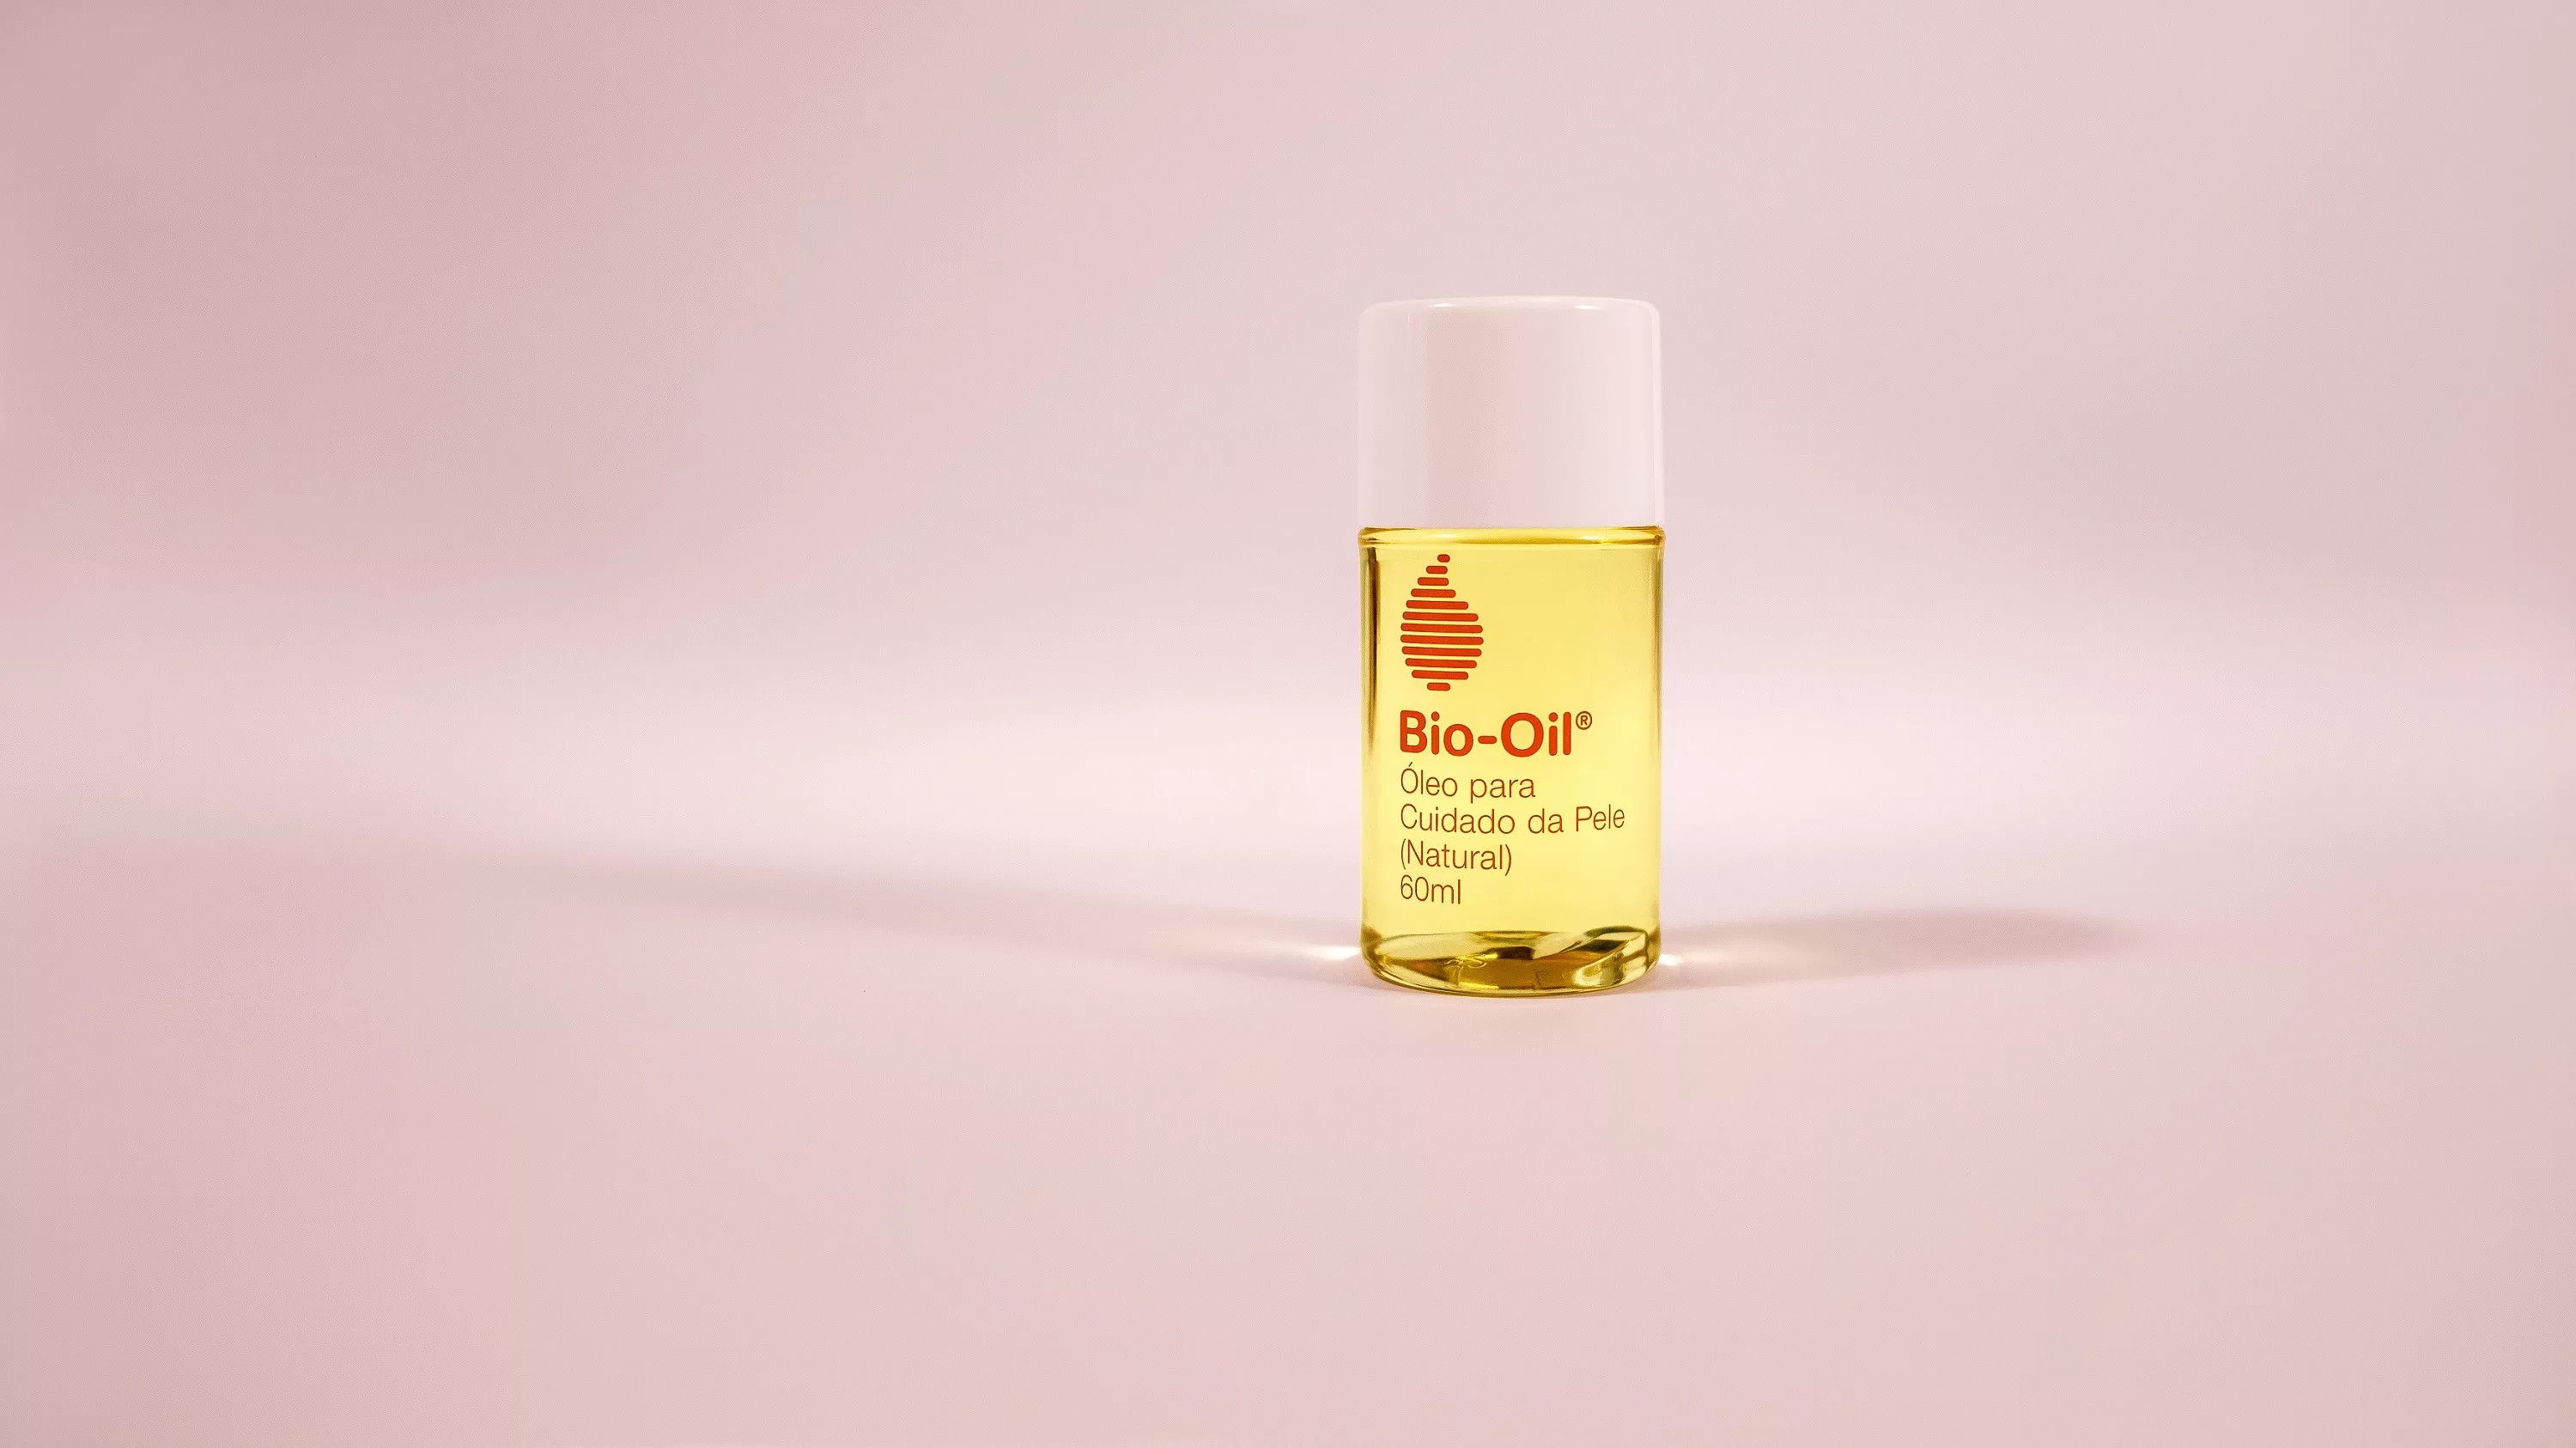 Óleo para cuidado da pele, Bio-Oil (Foto: Divulgação)